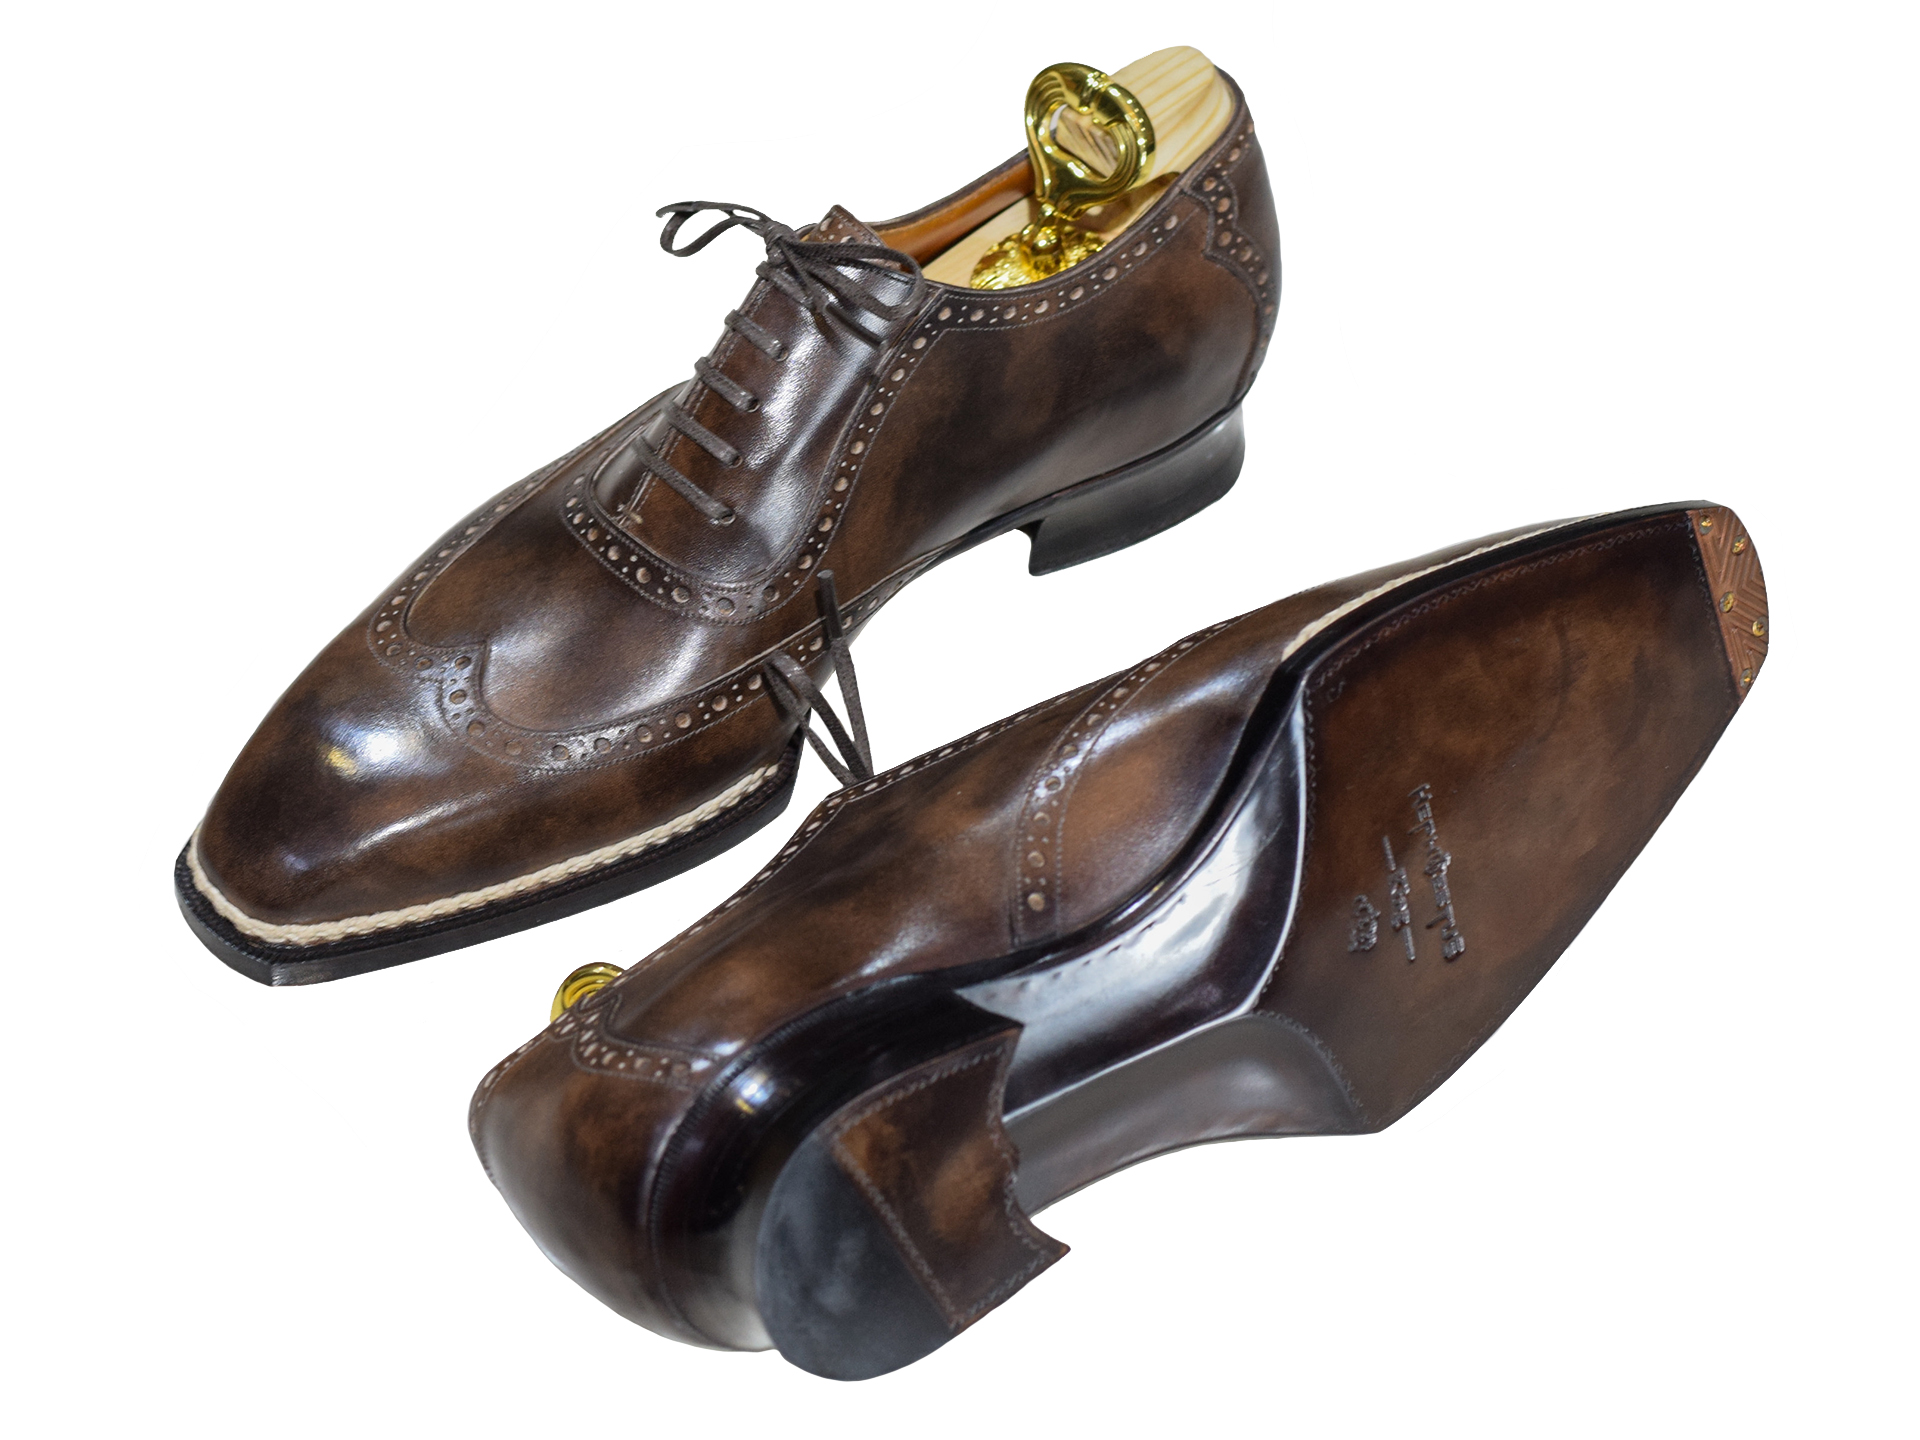 MTO Adelaide wingtip shoes - Premium line